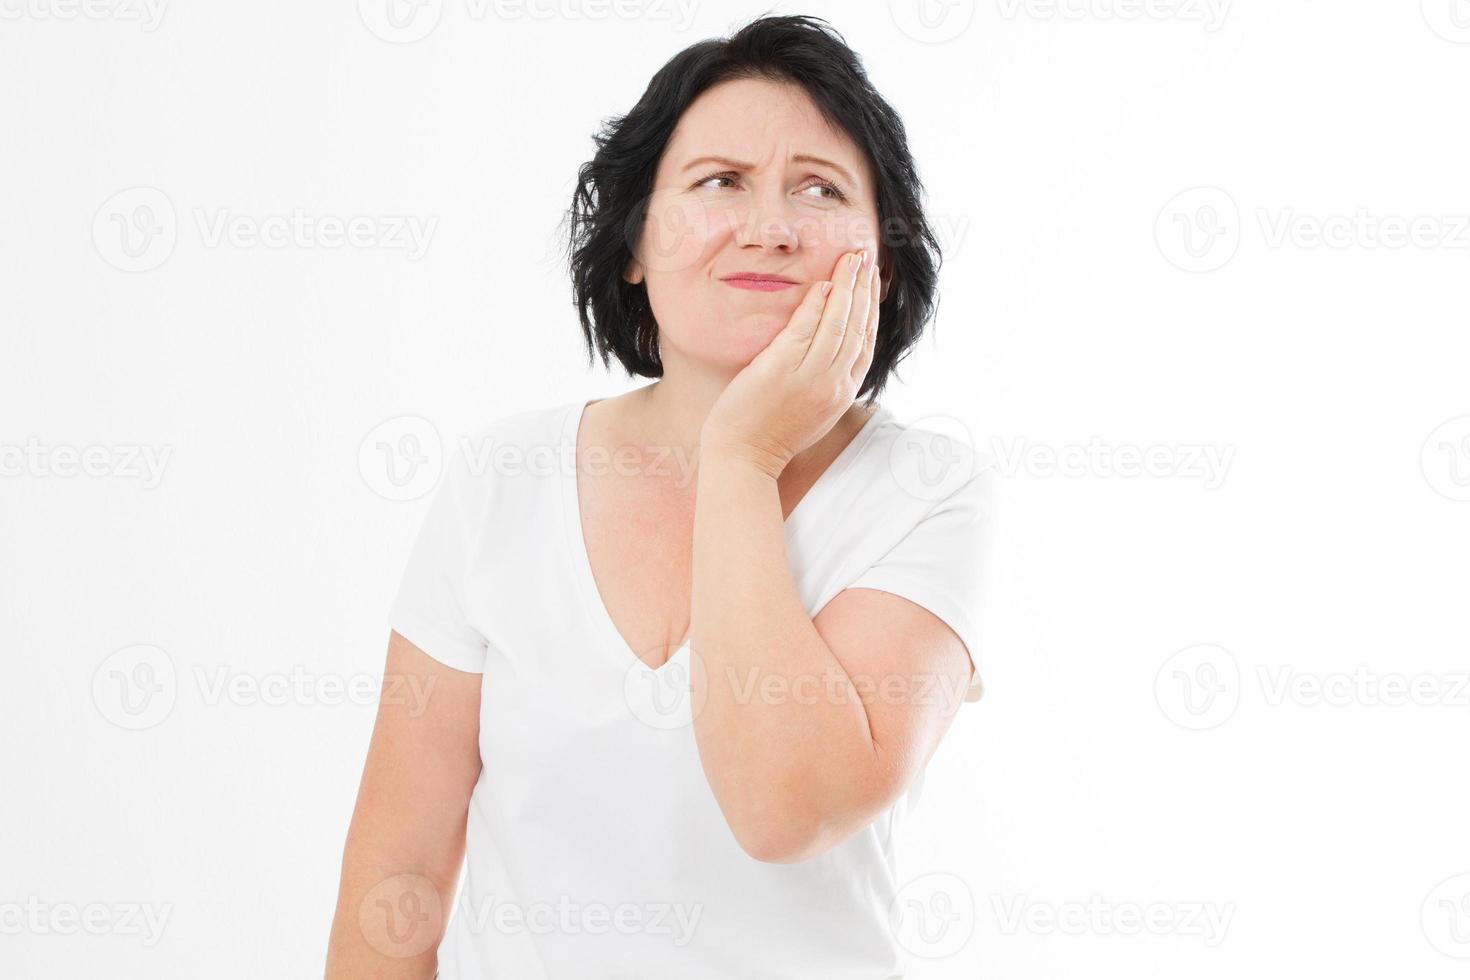 aantrekkelijke vrouw van in de veertig die met een pijnlijke uitdrukking op haar gekneusde wang drukt alsof ze vreselijke tandpijn heeft. vrouw van middelbare leeftijd met kiespijn kopieerruimte foto